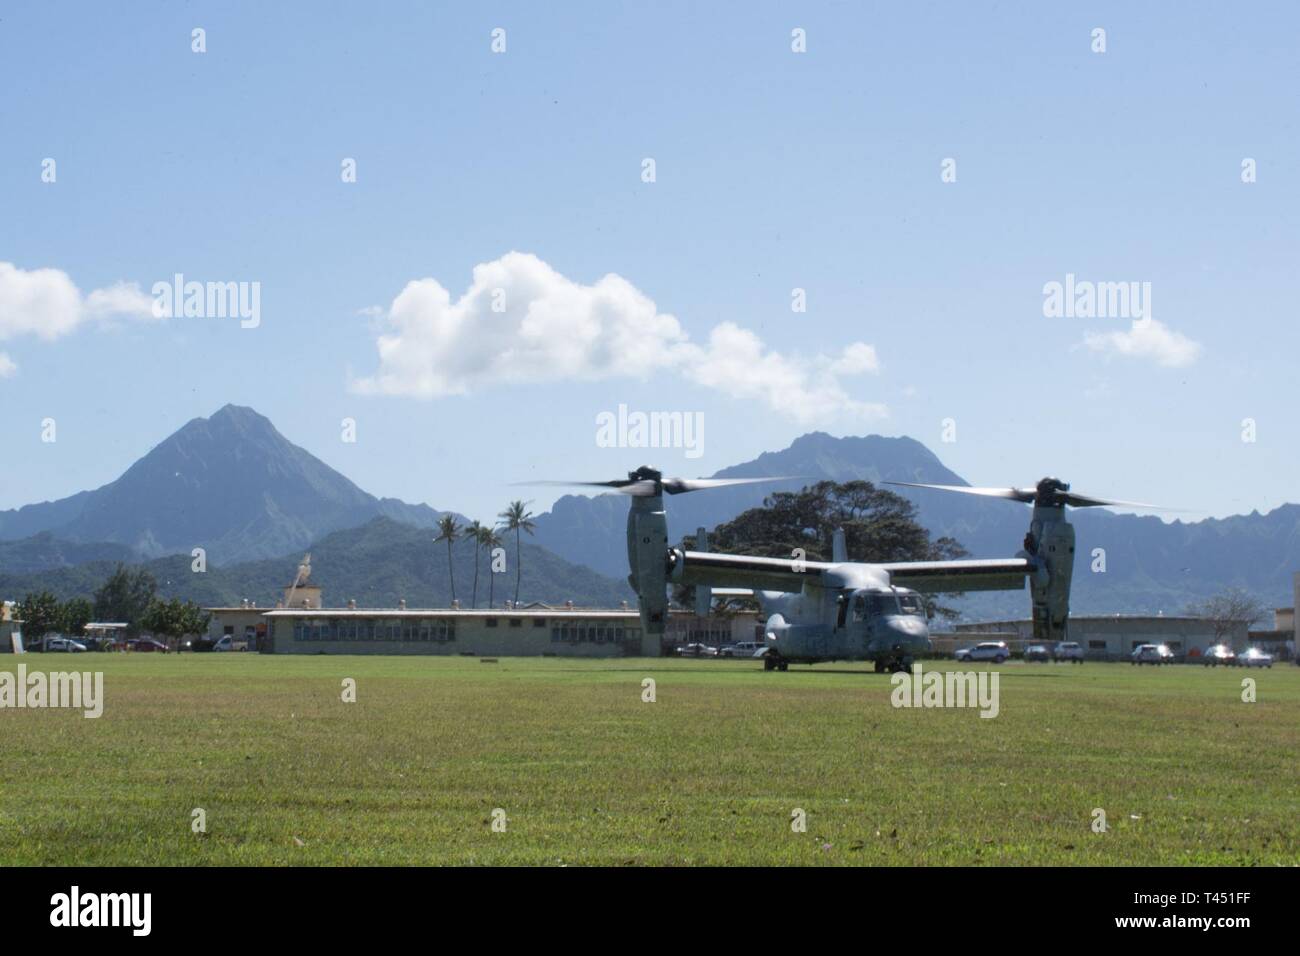 Une MV-22B hélicoptère à rotors basculants Osprey avec l'escadron 268 à rotors basculants moyen marin atterrit à la zone d'atterrissage 216 pour récupérer une simulation d'écrasement d'un aéronef au cours d'un pilote de recherche et sauvetage de combat à la formation de base du Corps des Marines, Hawaii le 26 février 2019. Le service commun de formation CSAR renforcement de capacités d'intervention de crise pour inclure la localisation, la communication, en fournissant des soins médicaux et de la récupération du membre isolé. Banque D'Images